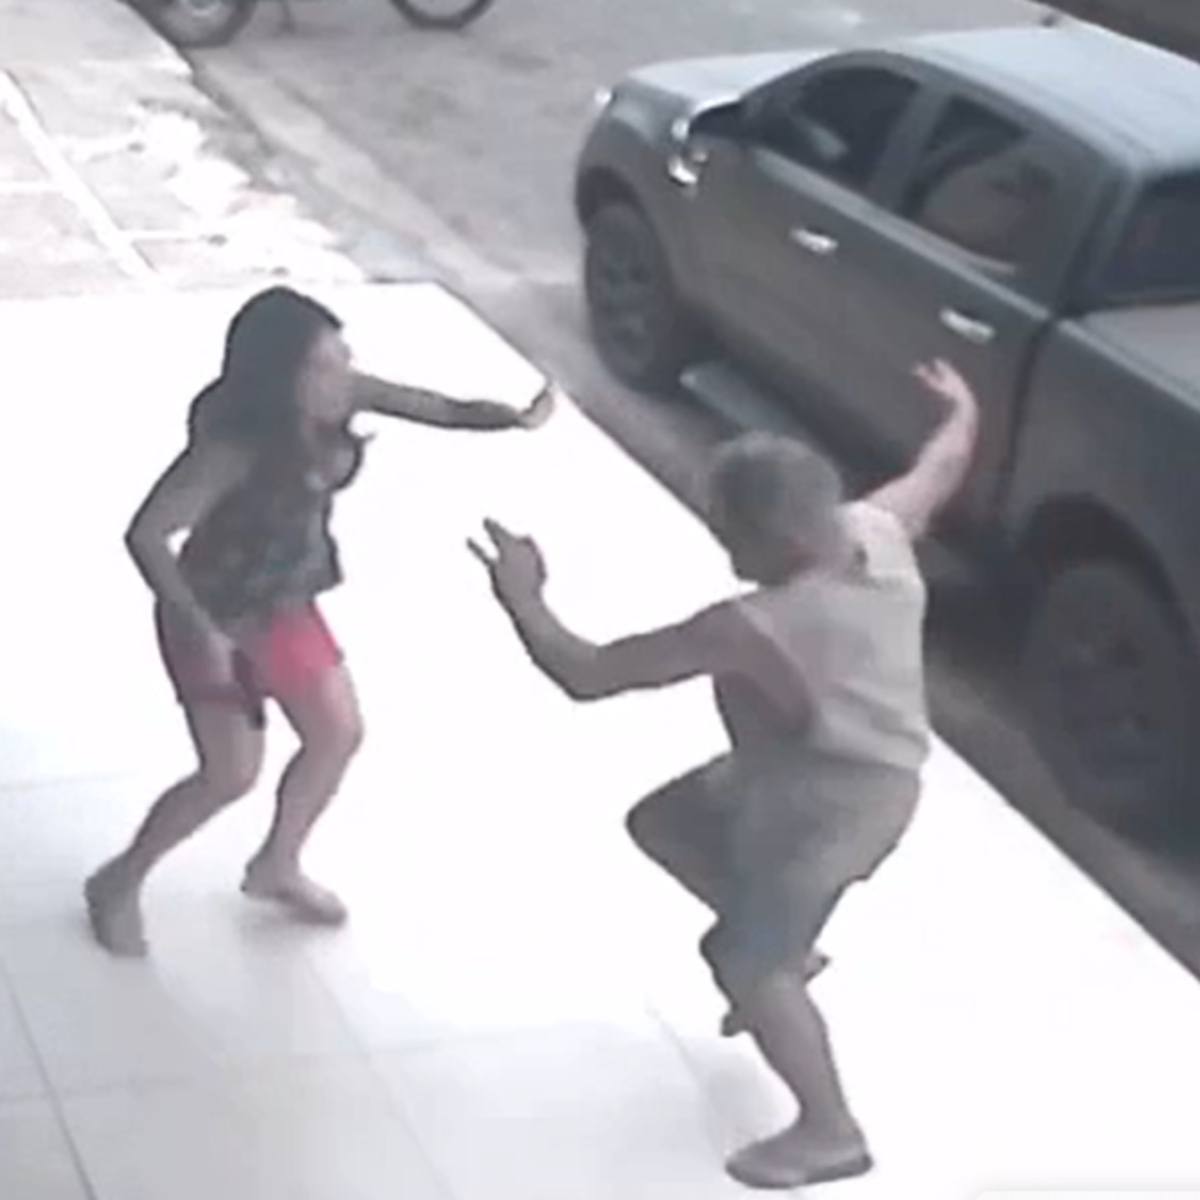  VÍDEO: Delegada atira em homem em situação de rua após ser agredida 